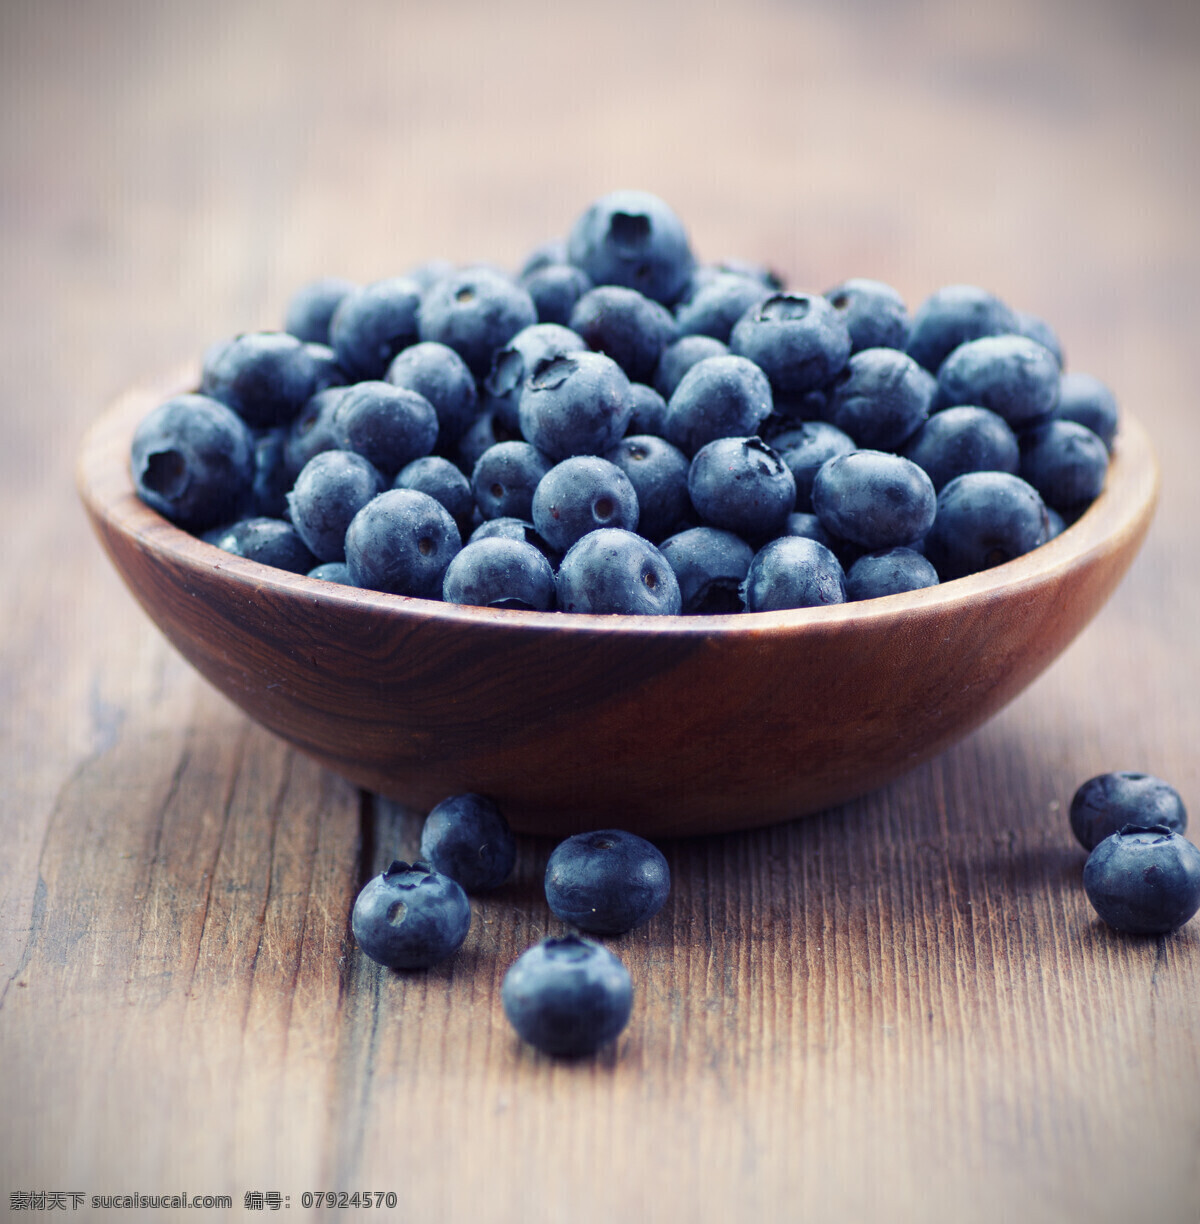 高清蓝莓 一筐蓝莓 散落的蓝莓 蓝莓 成熟蓝莓 木地板 高清 高清图片 生物世界 水果